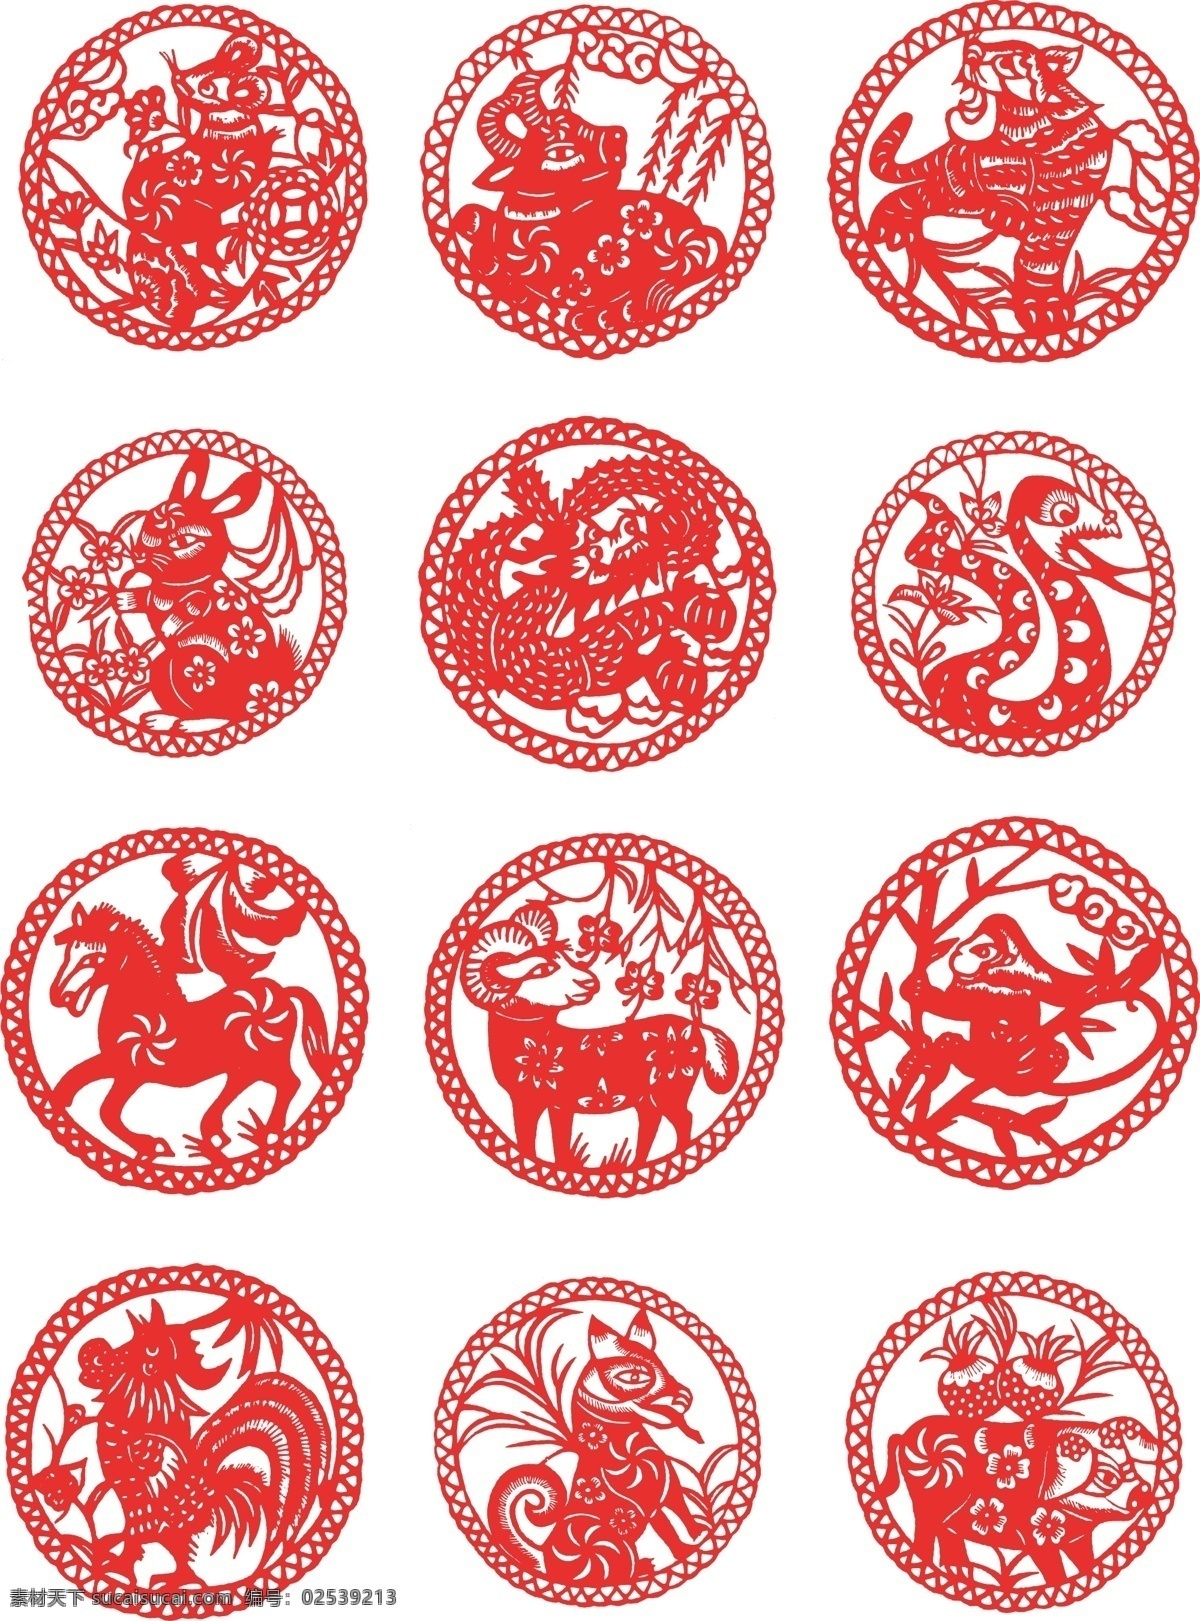 圆形 十二生肖 剪纸 图 12生肖 生肖剪纸 传统素材 新年素材 中国风 平面设计 文化艺术 传统文化